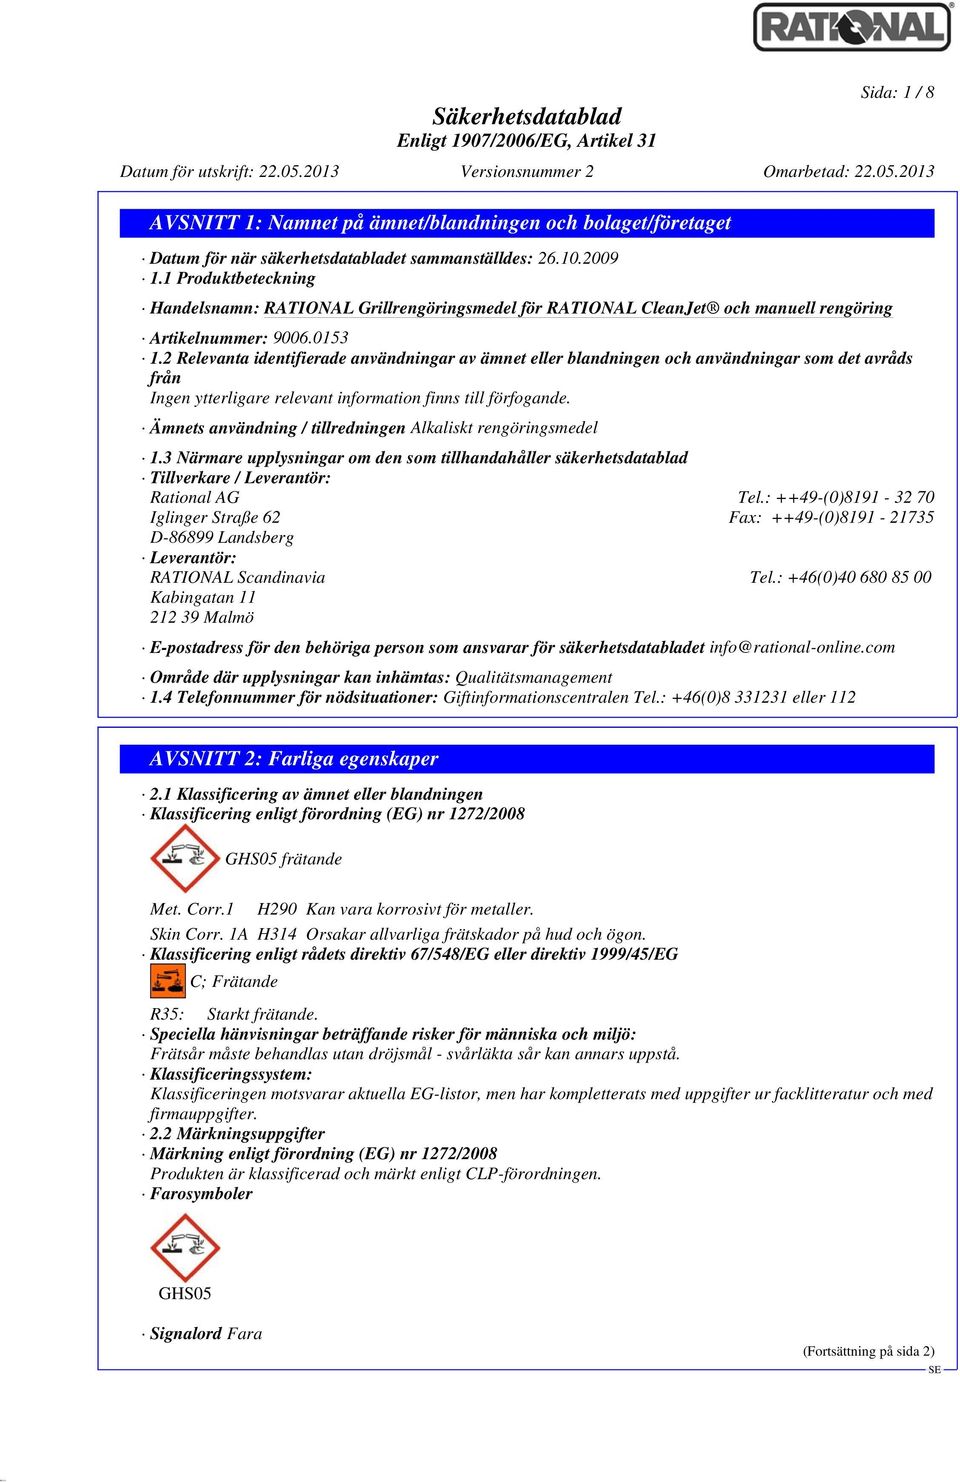 Ämnets användning / tillredningen Alkaliskt rengöringsmedel 1.3 Närmare upplysningar om den som tillhandahåller säkerhetsdatablad Tillverkare / Leverantör: Rational AG Tel.